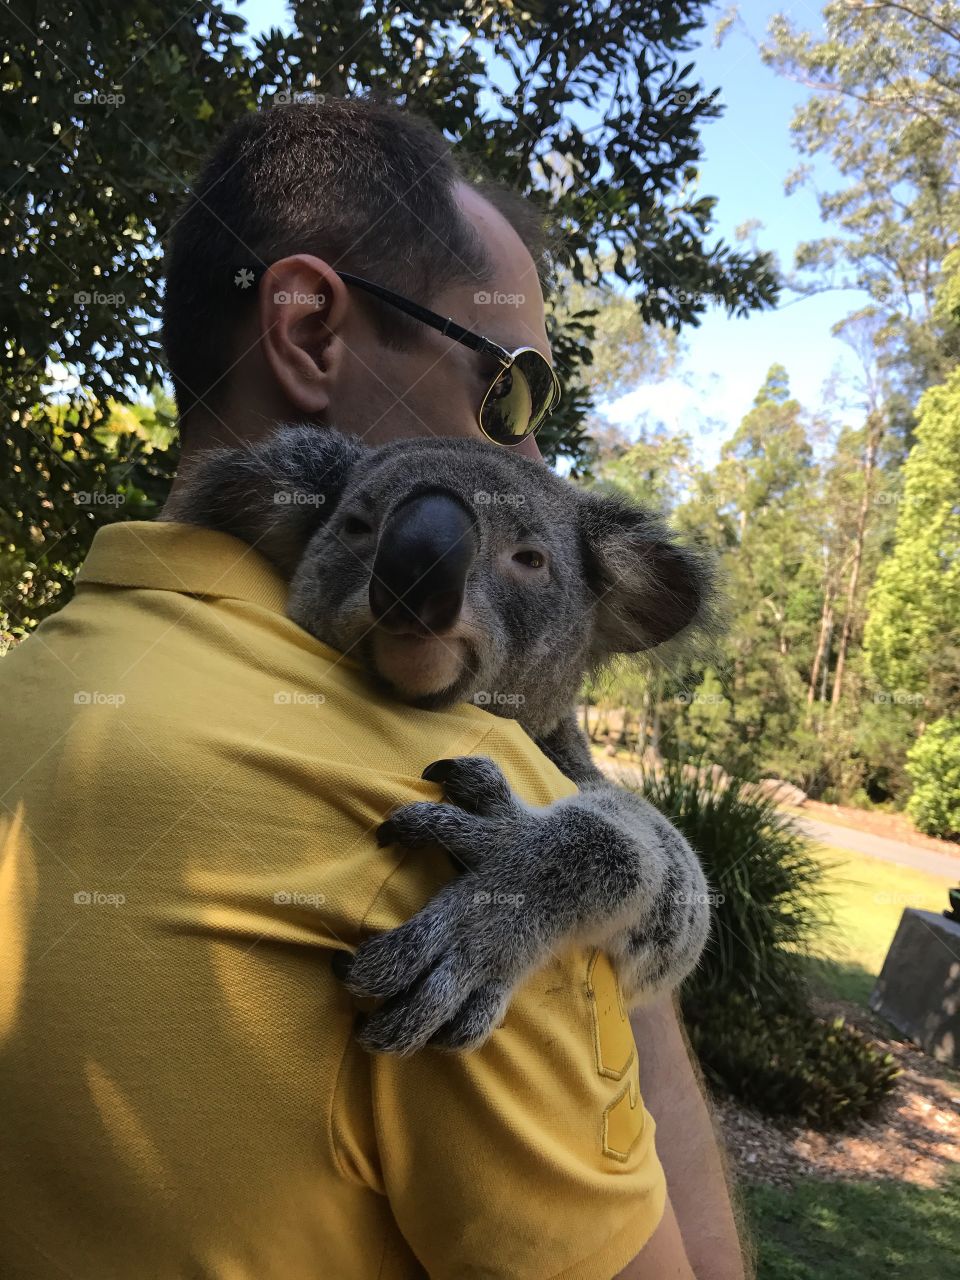 Hugging a koala